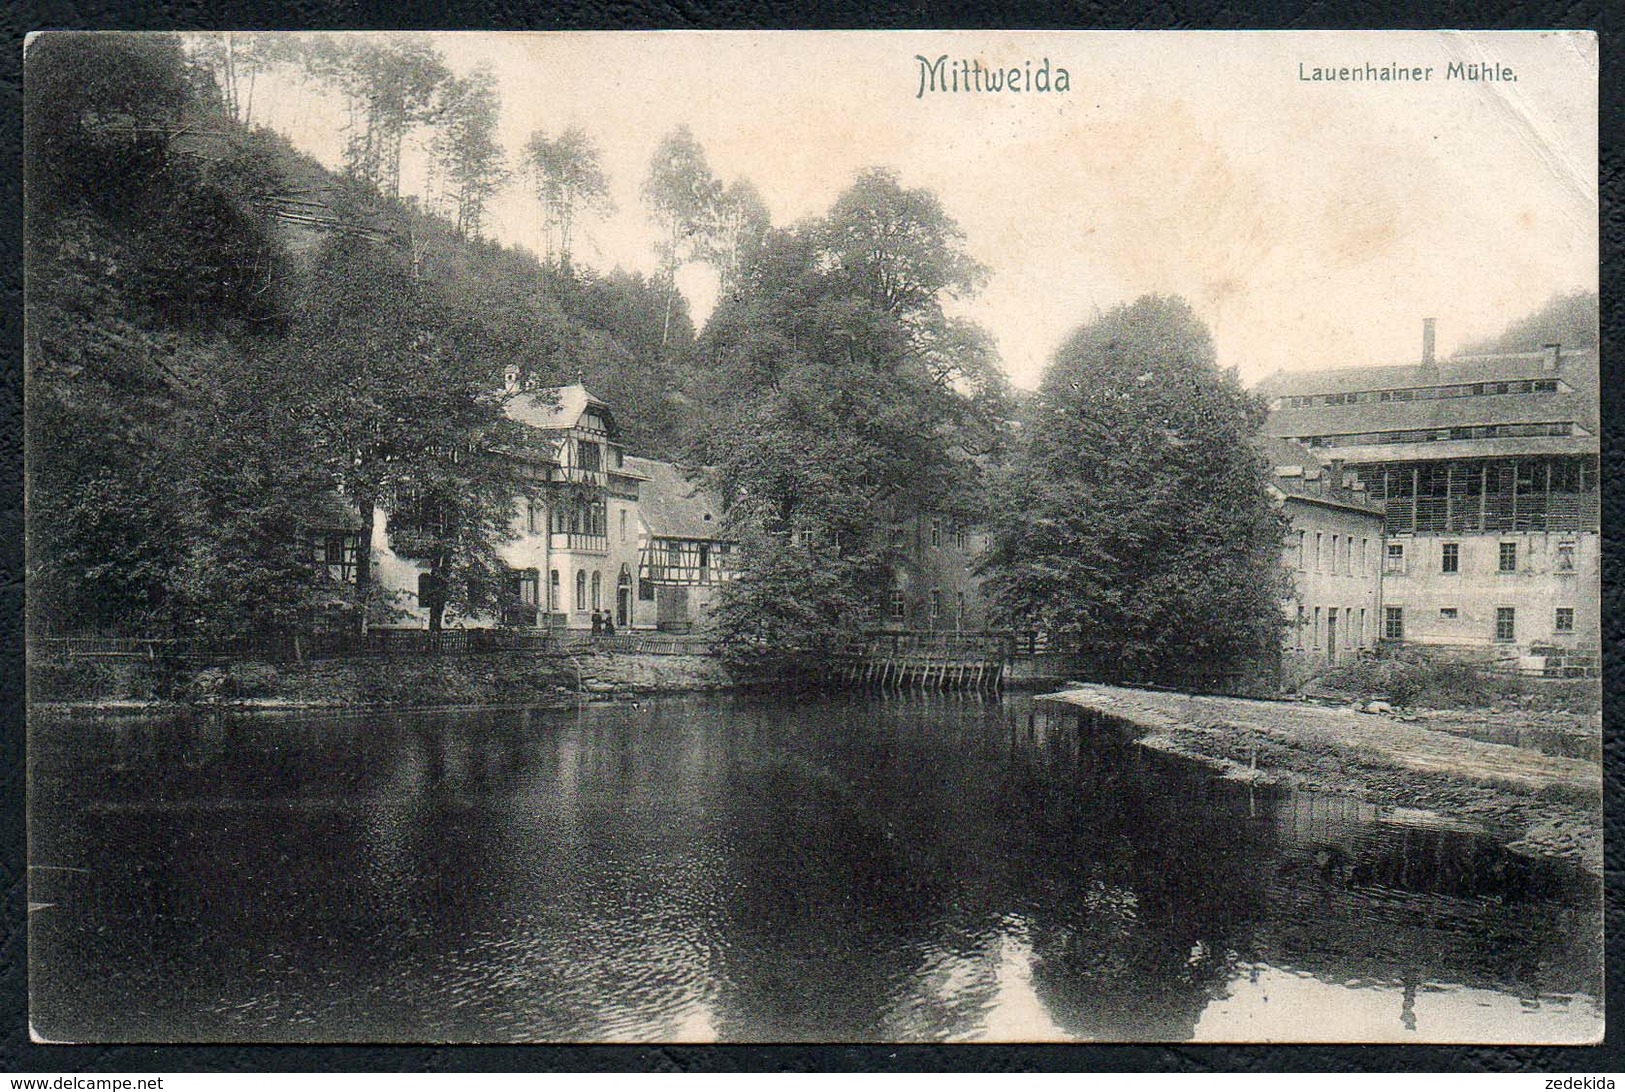 C3599 - Lauenhain Mühle Lauenhainer Mühle Bei Mittweida - Wassermühle - Mittweida